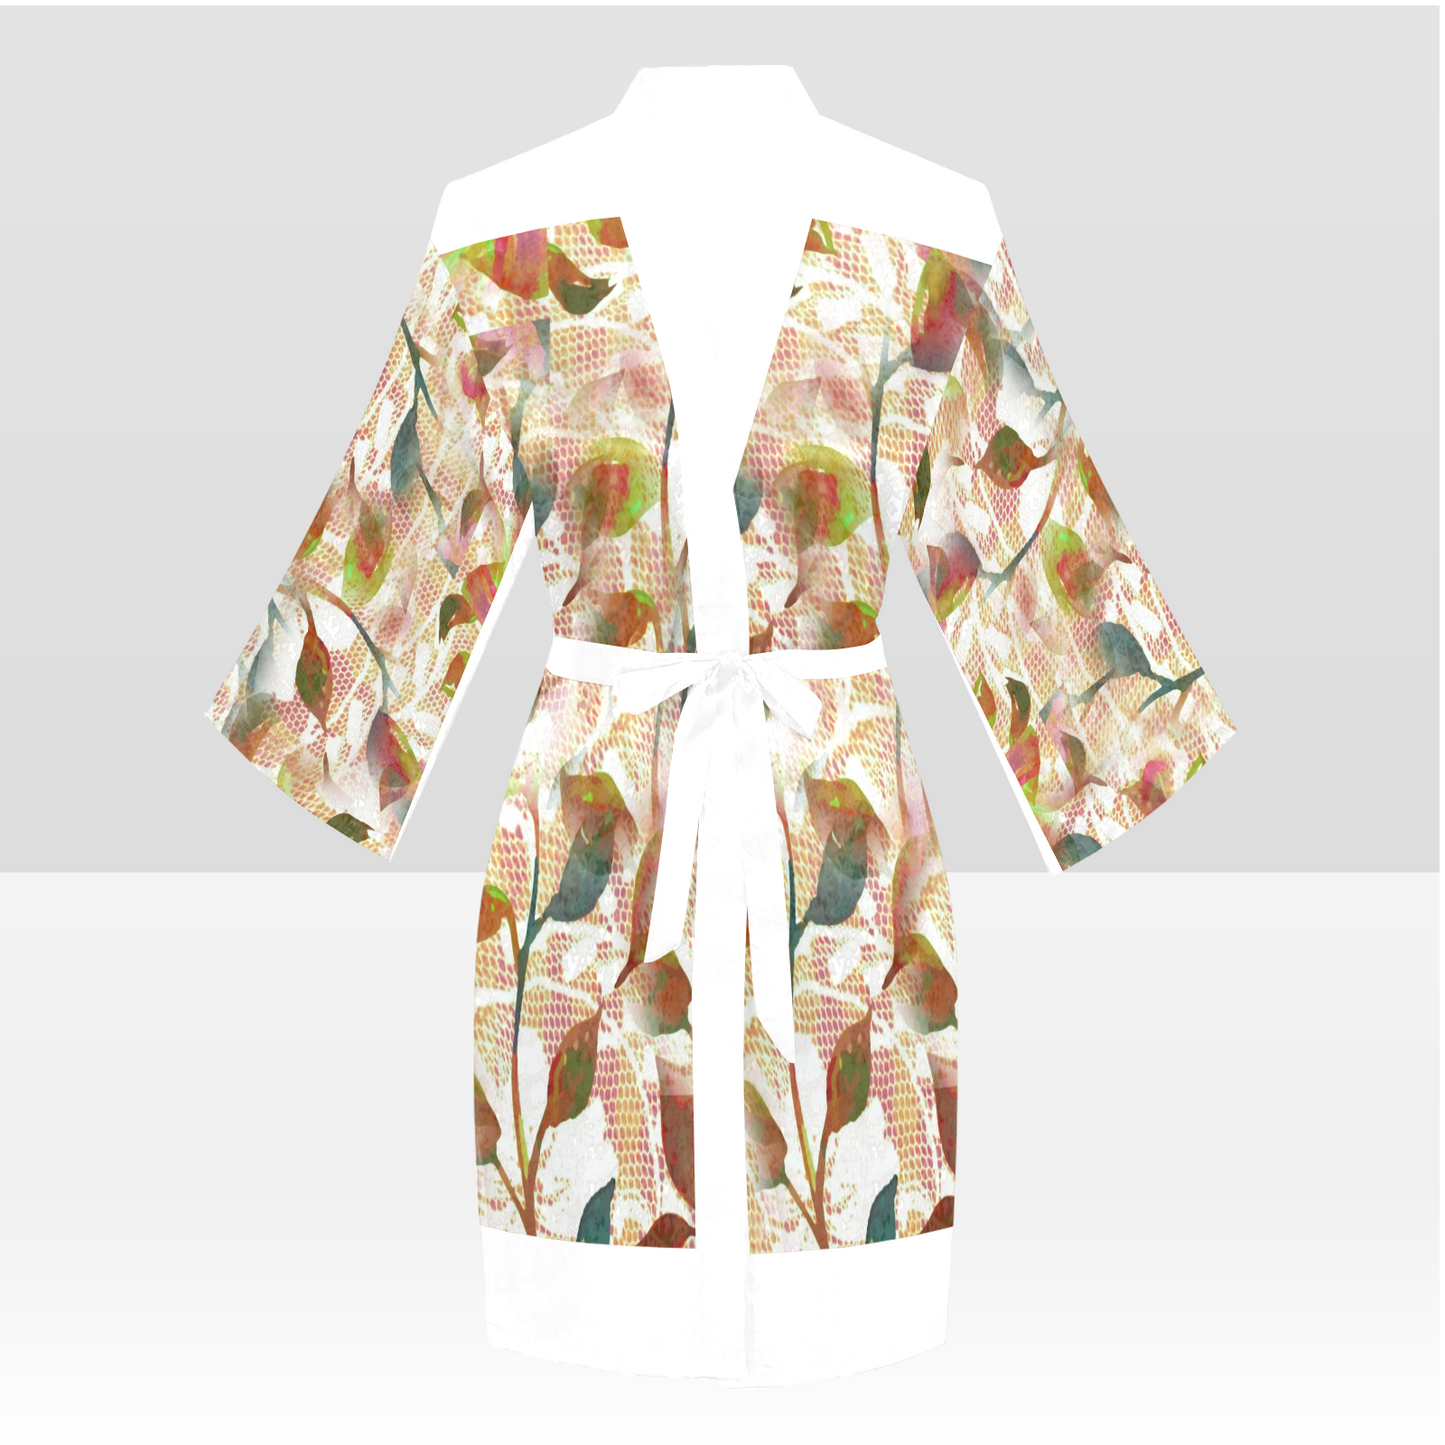 Victorian Lace Kimono Robe, Black or White Trim, Sizes XS to 2XL, Design 52